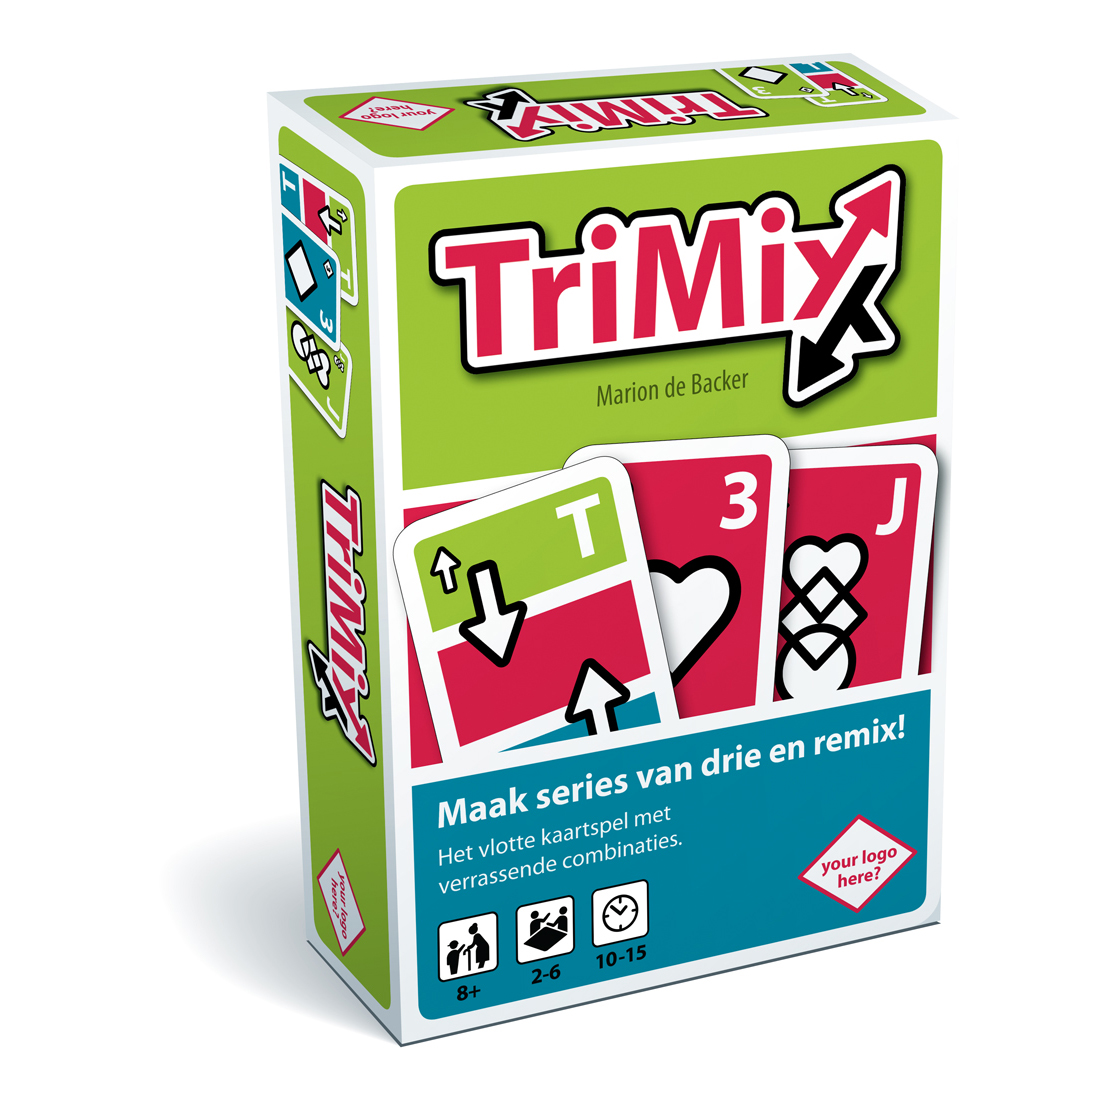 Trimix-verpakking